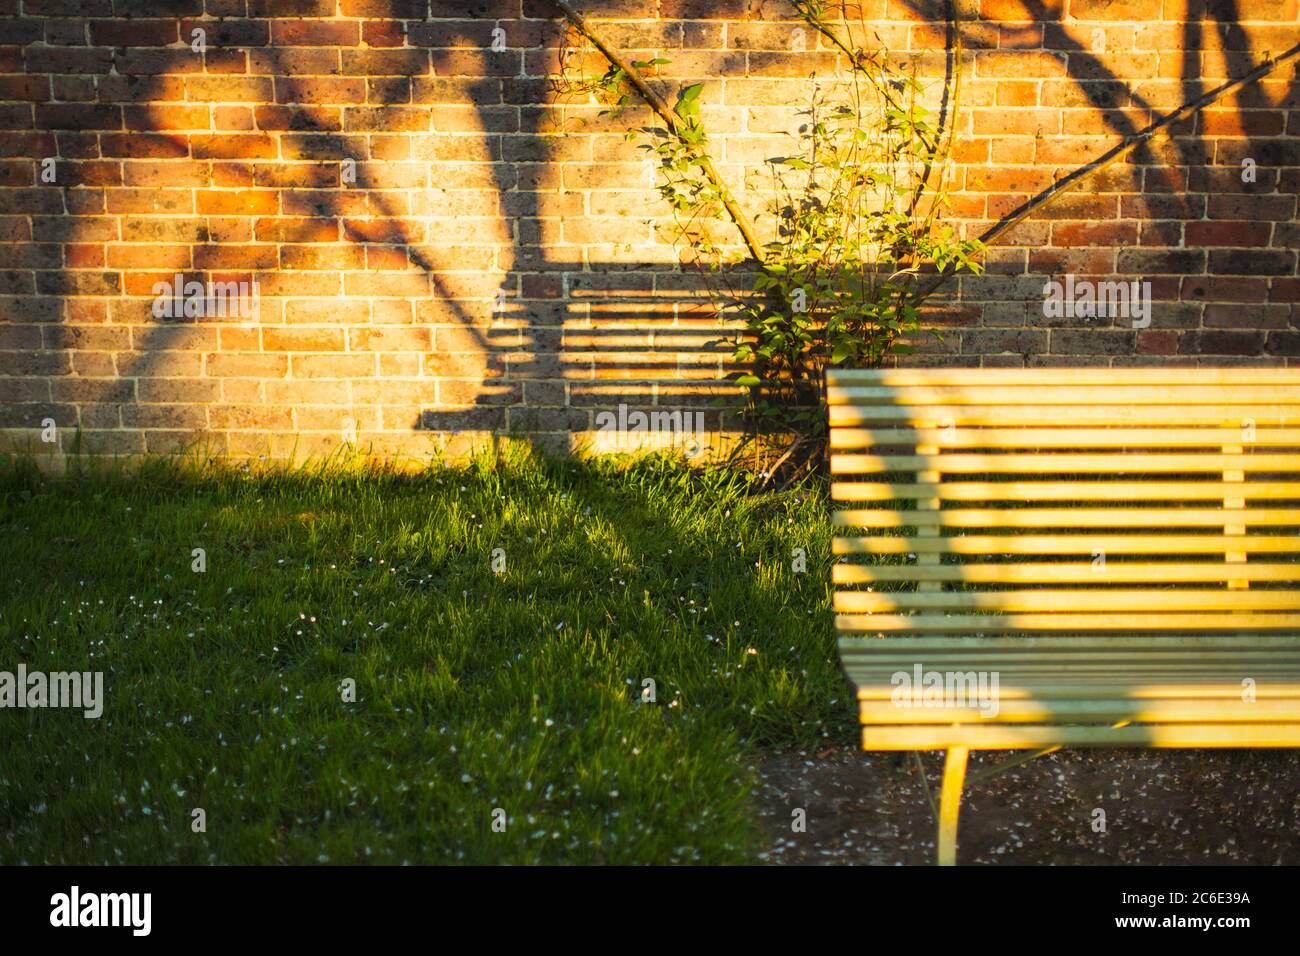 Ombra di panca su muro di mattoni in giardino soleggiato Foto Stock